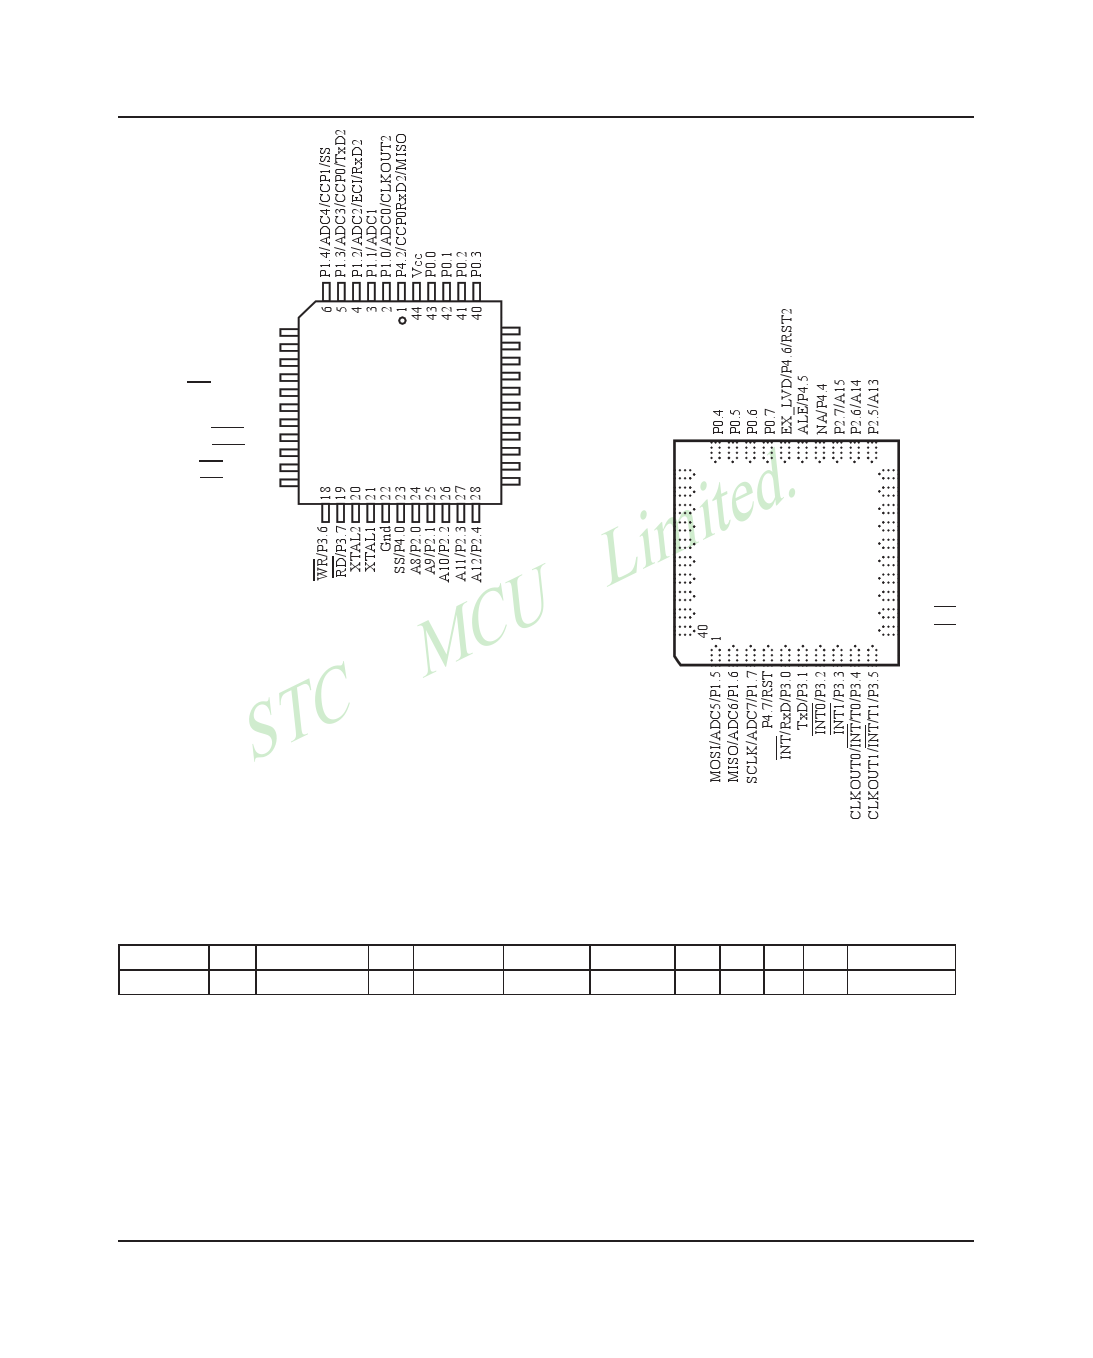 STC12C5A60S2 arduino